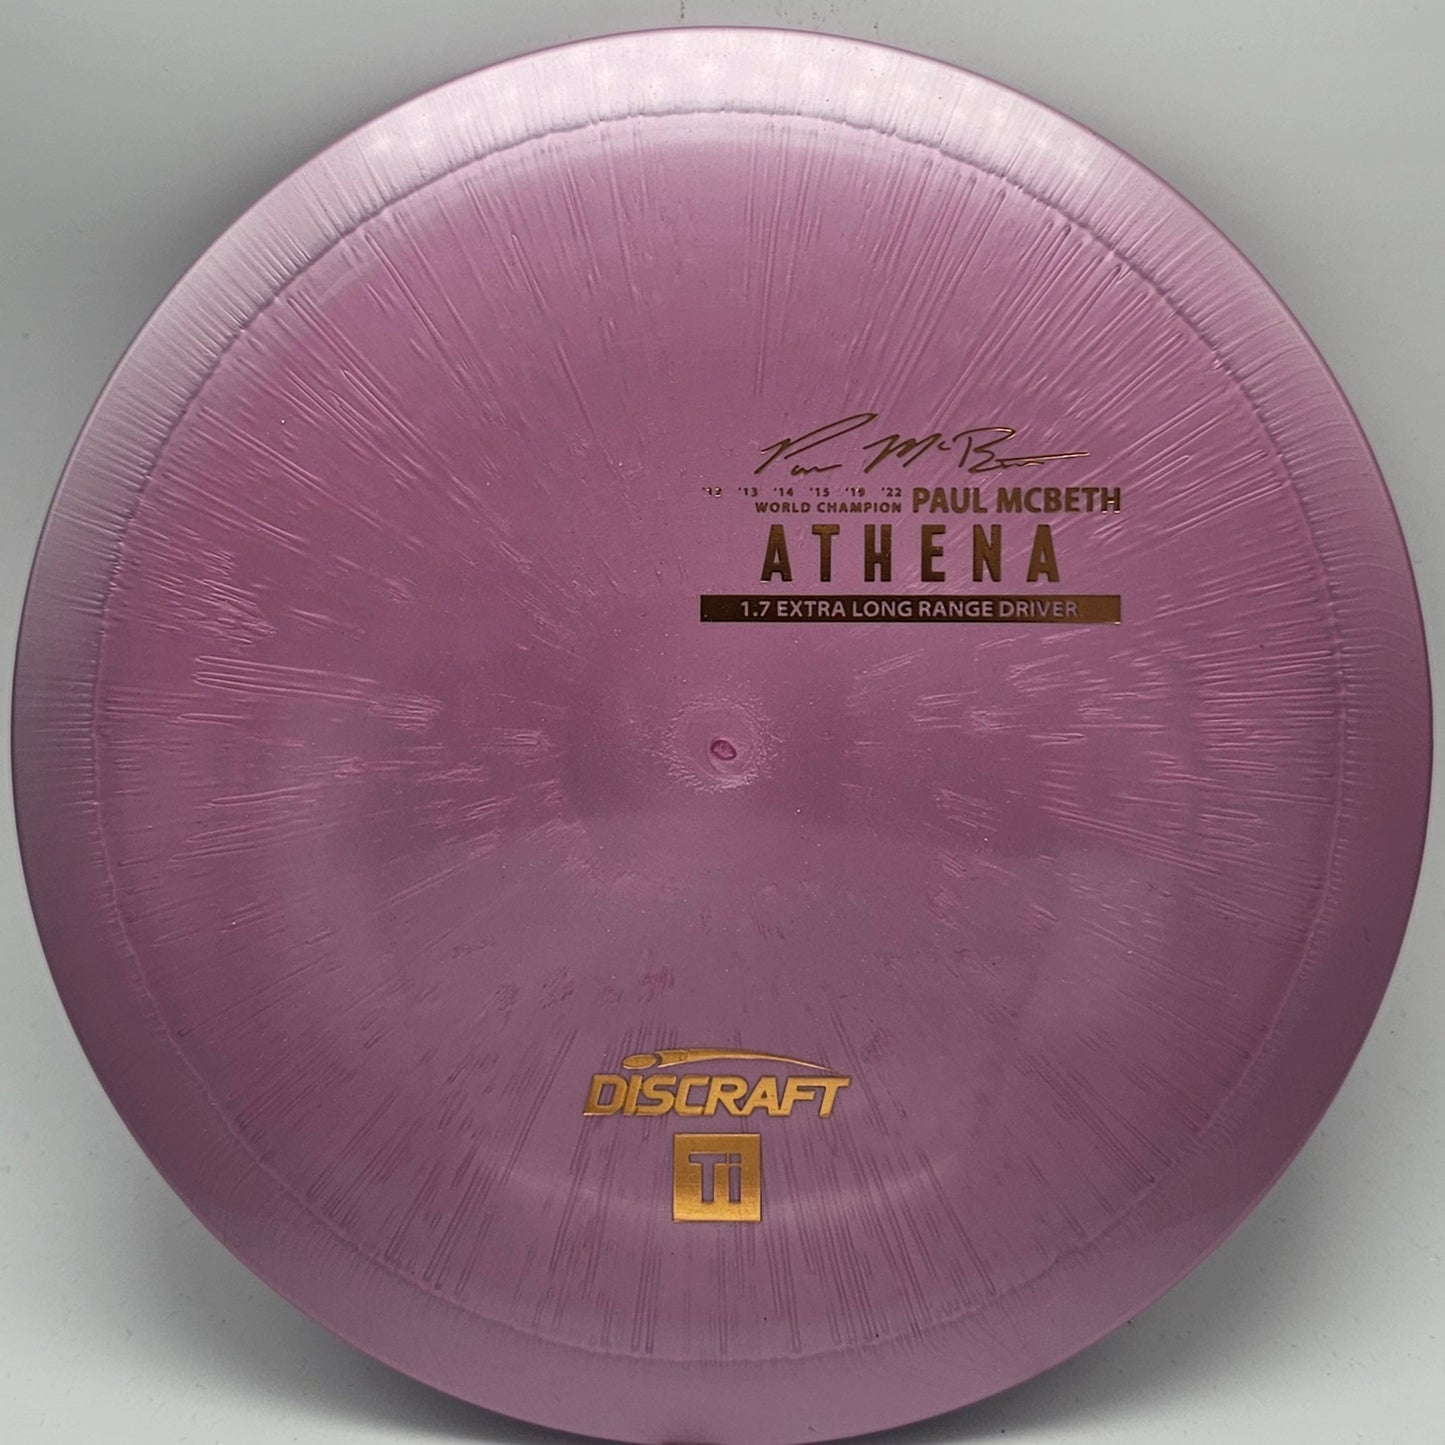 Discraft Titanium Ti Athena - Paul McBeth